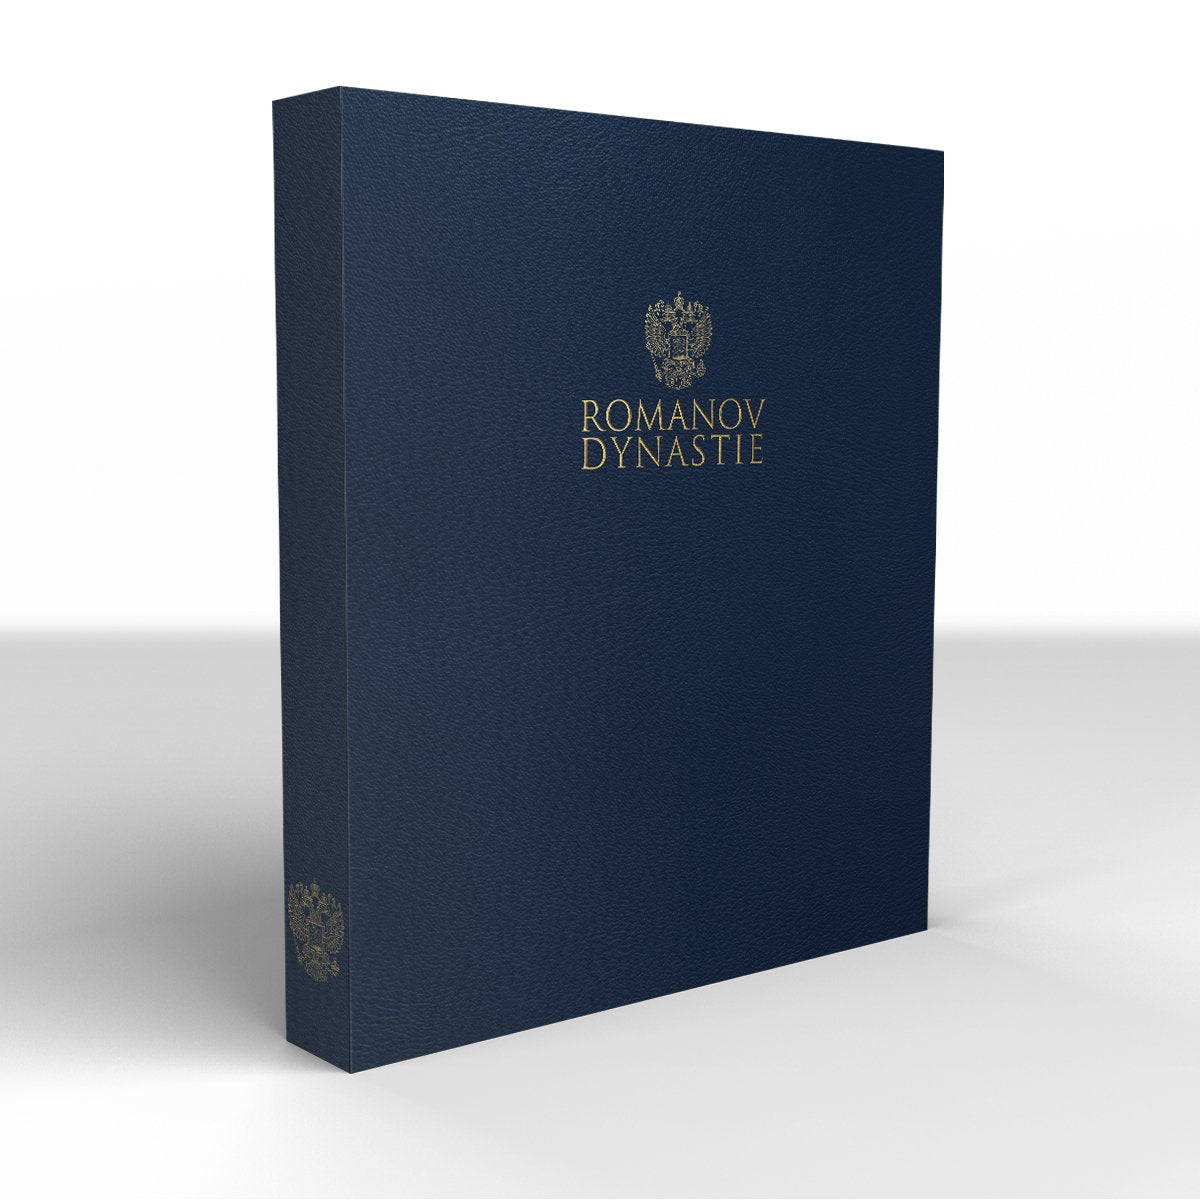 Bewaaralbum "Romanov Dynastie" - Edel Collecties